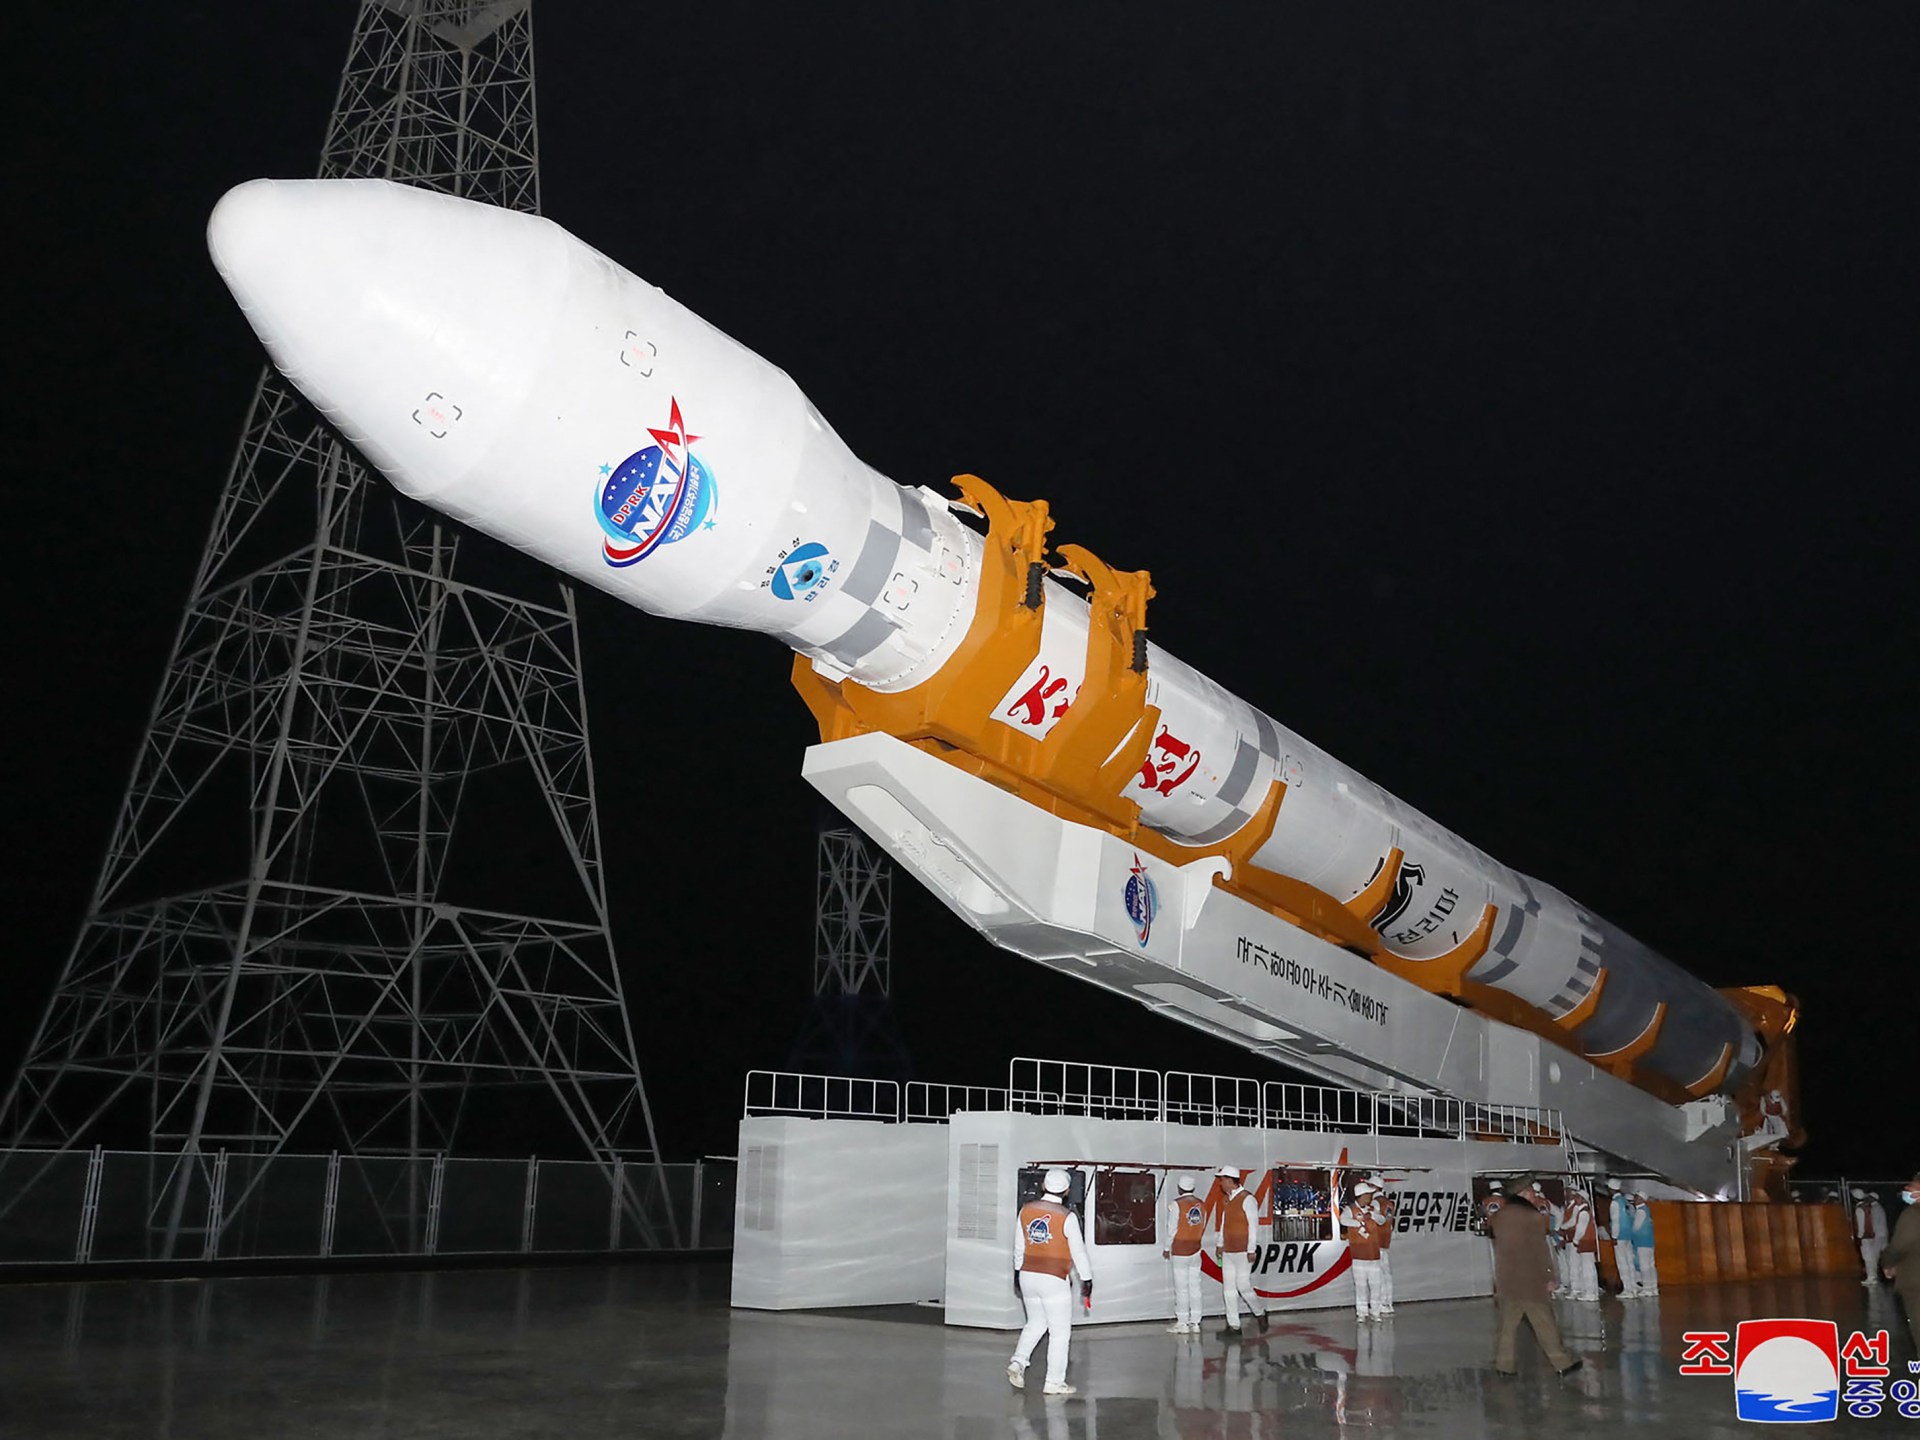 كوريا الشمالية تخطط لإطلاق قمر صناعي فضائي بحلول 4 يونيو: اليابان |  أخبار الأسلحة